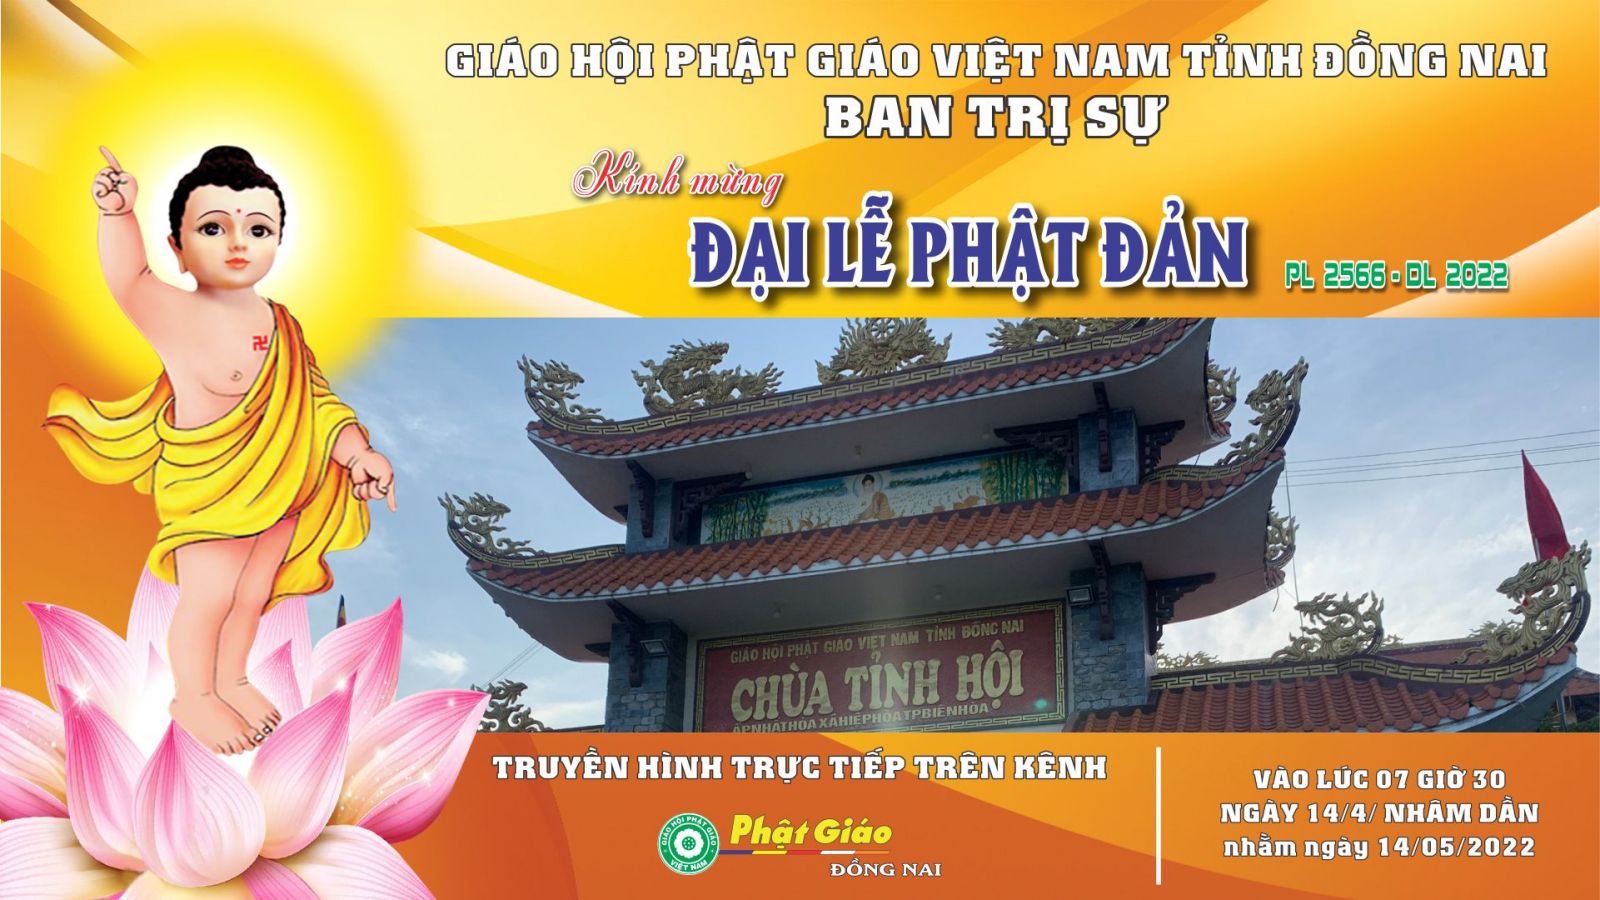 Trực tiếp: Ban Trị sự GHPGVN tỉnh Đồng Nai - Trang nghiêm tổ chức Đại lễ Phật Đản PL 2566 - DL 2022.